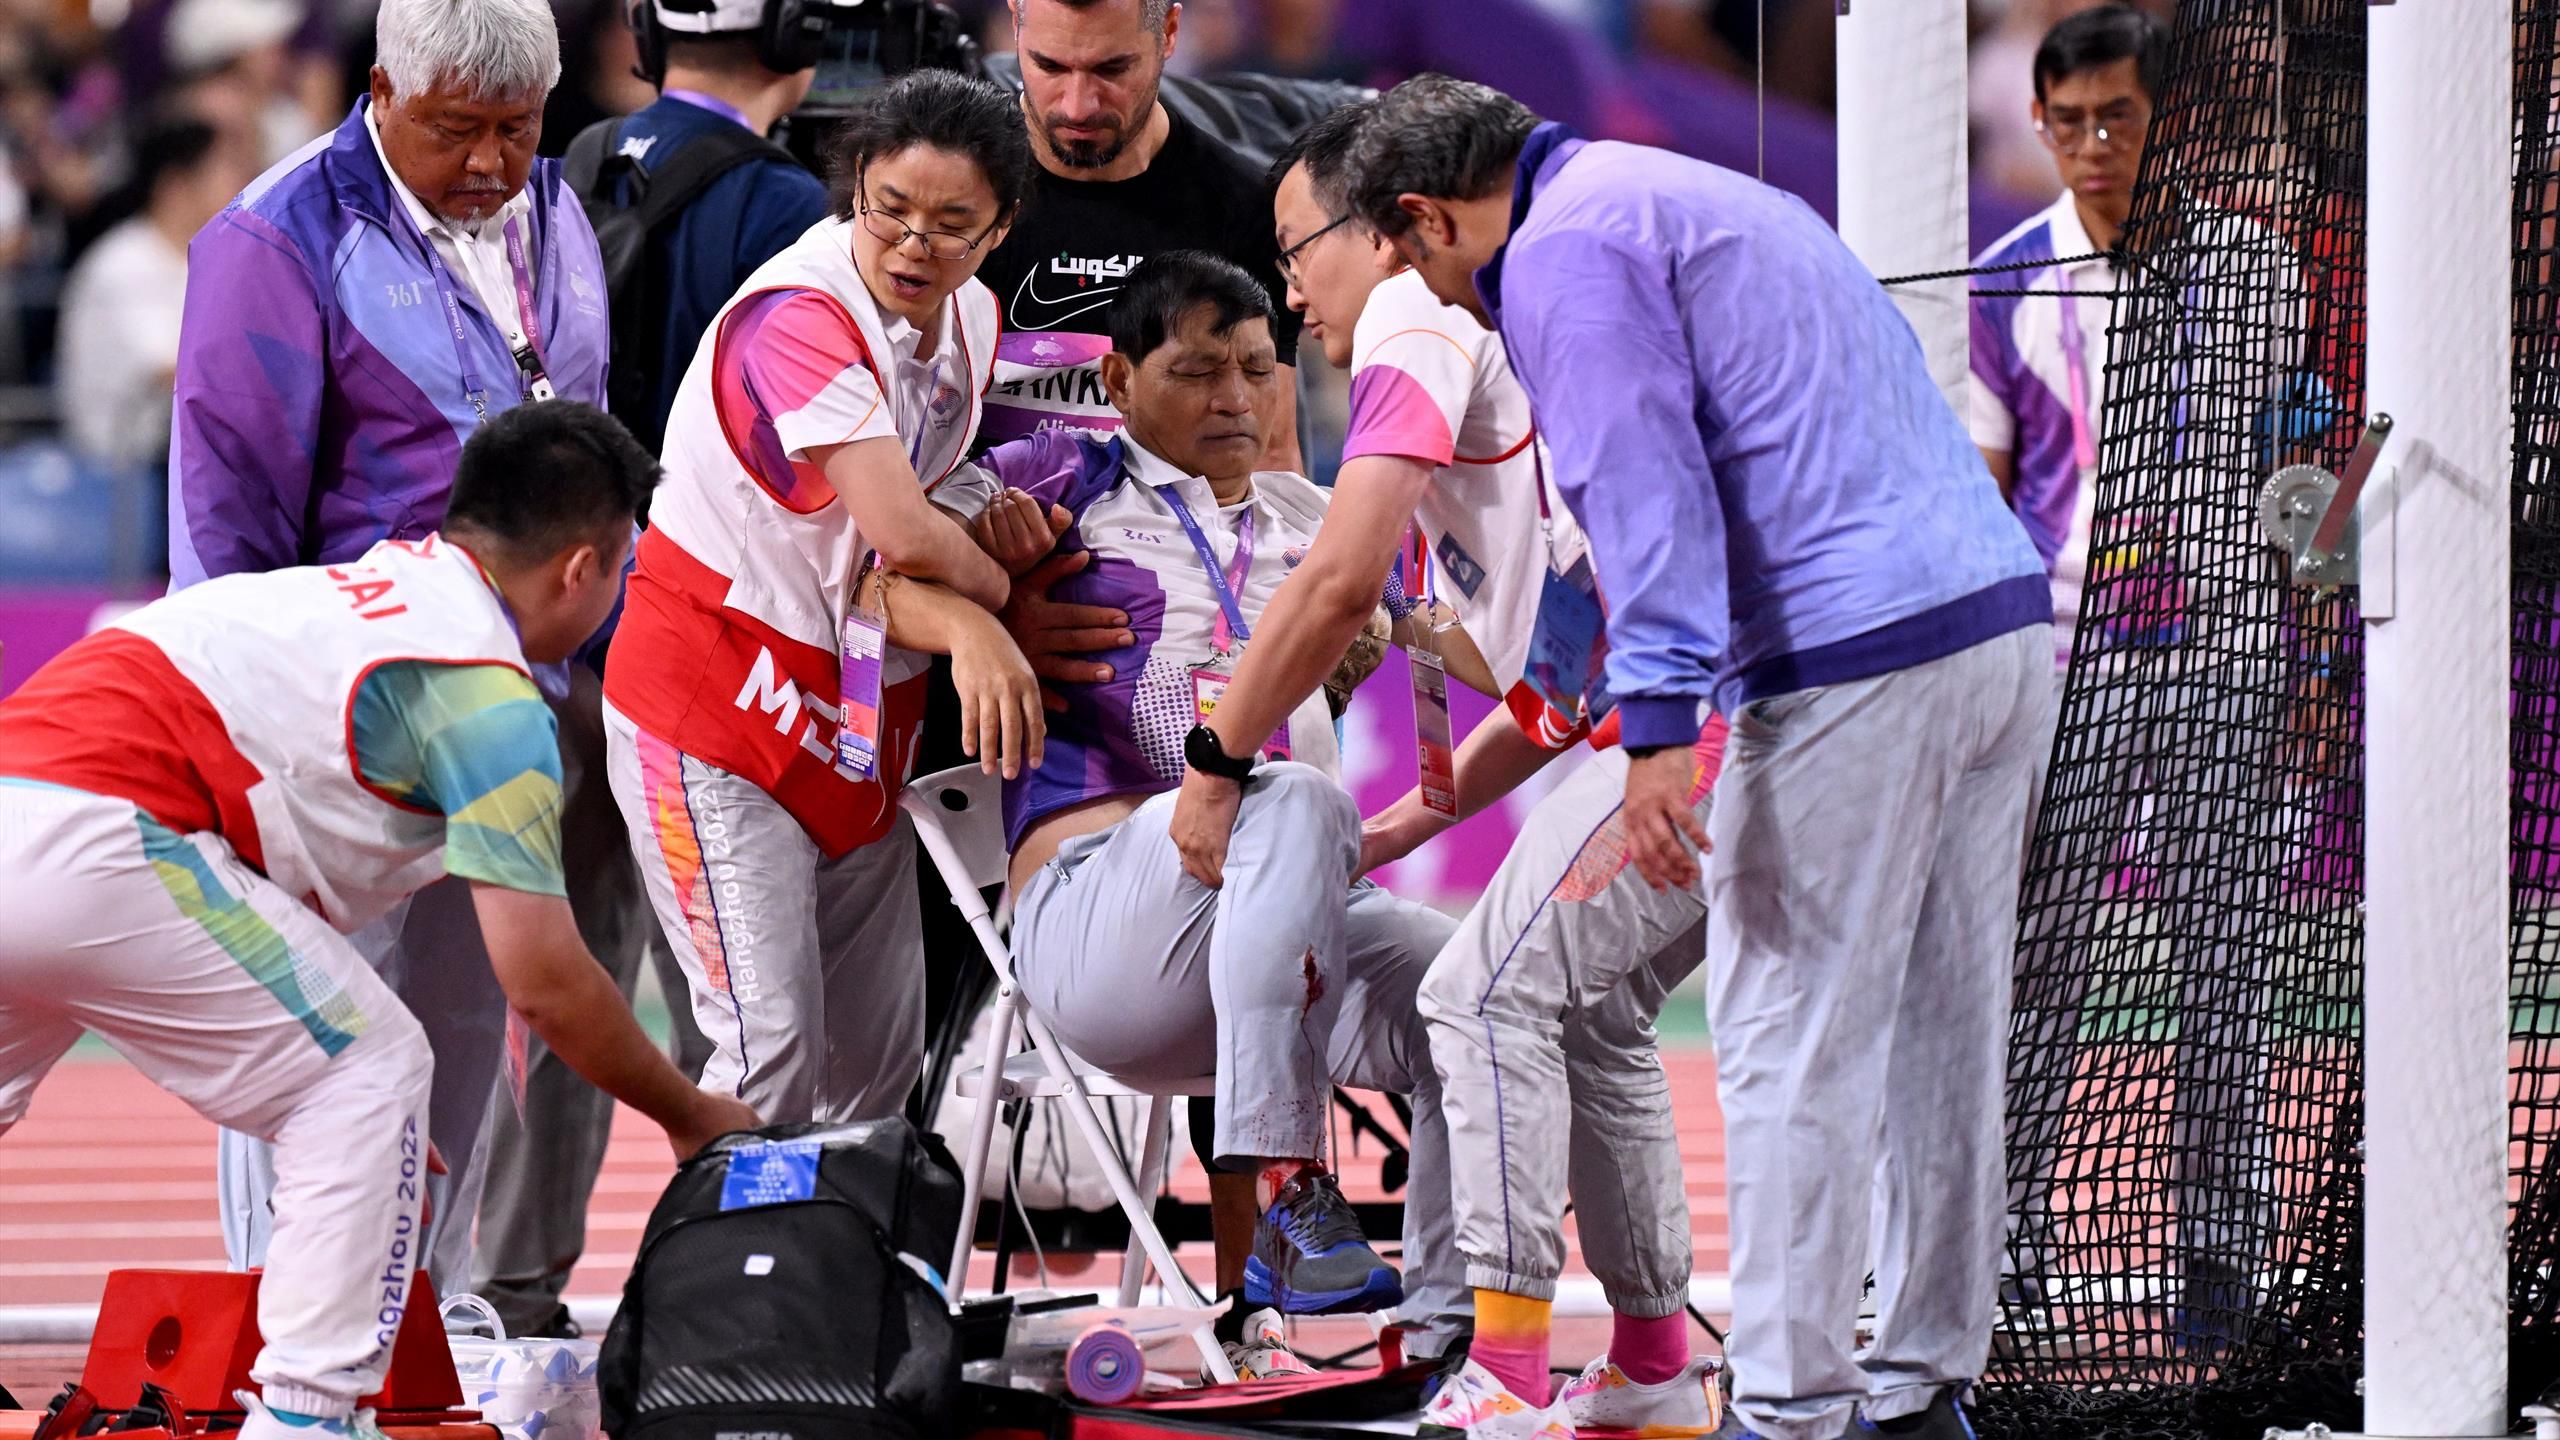 Kampfrichter bei Asienspielen von Hammer am Bein getroffen und schwer verletzt